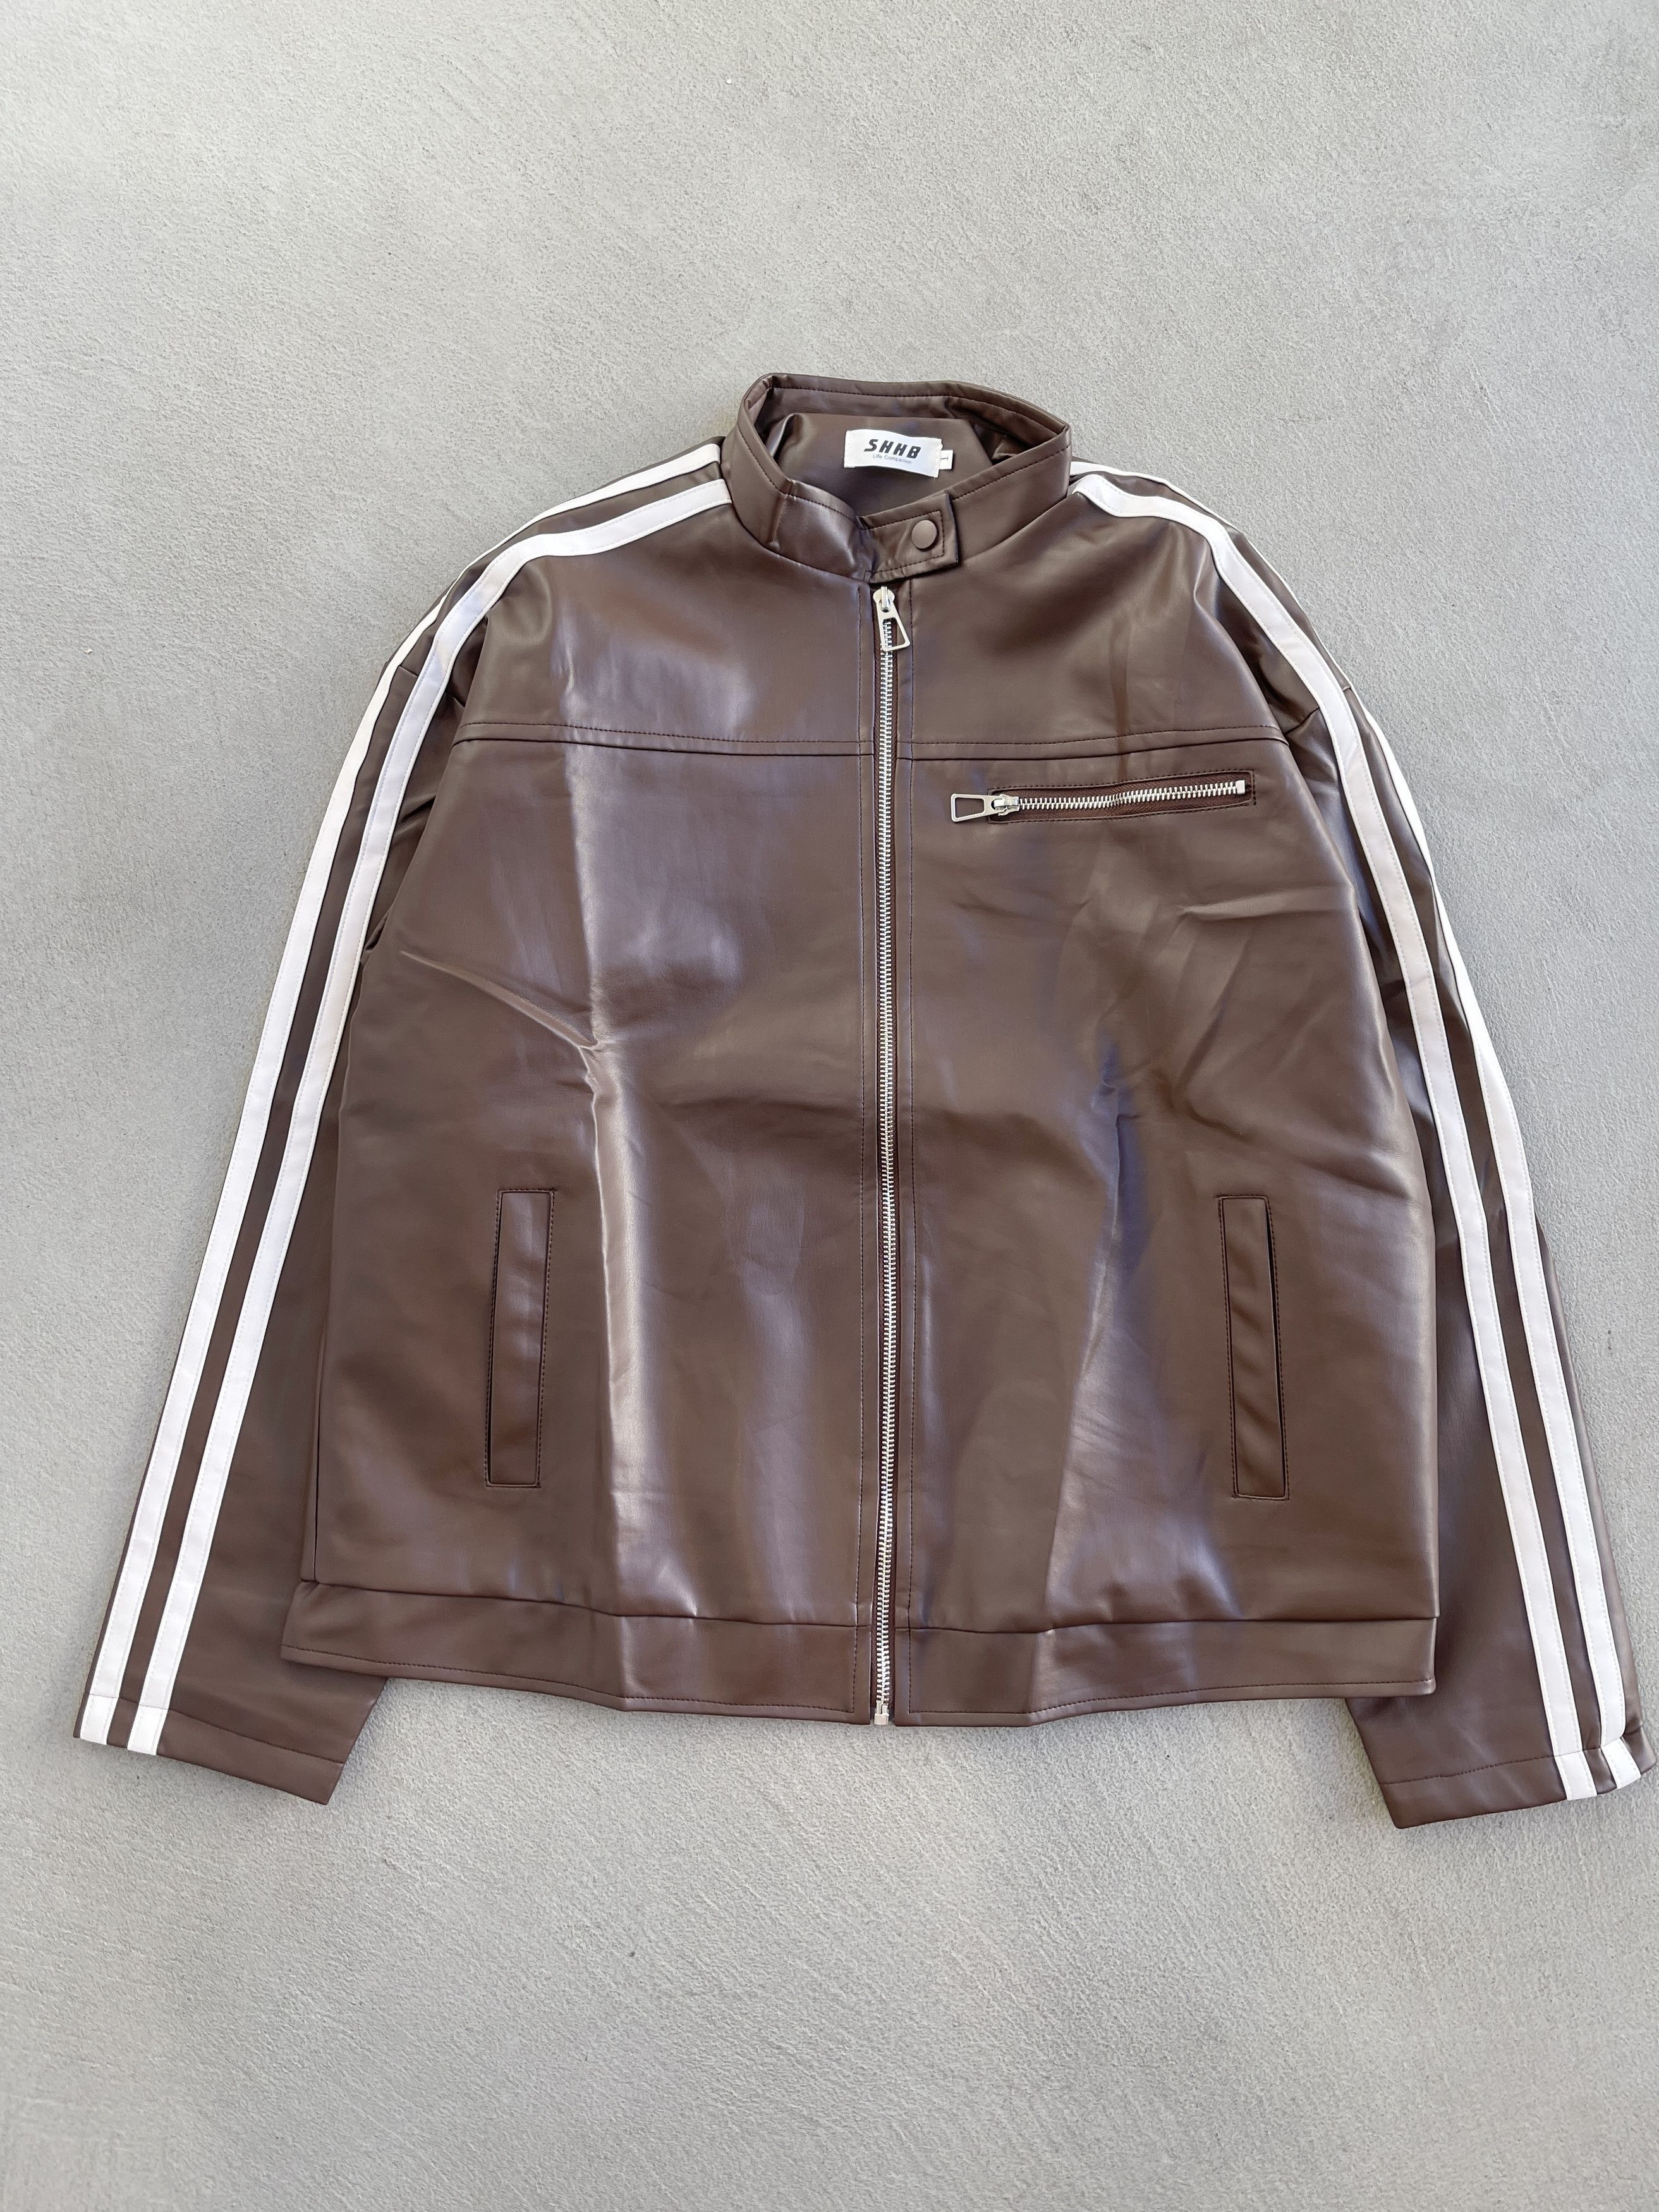 Vintage - STEAL! 2000s Japan Stripe Leather Jacket (M) - 1